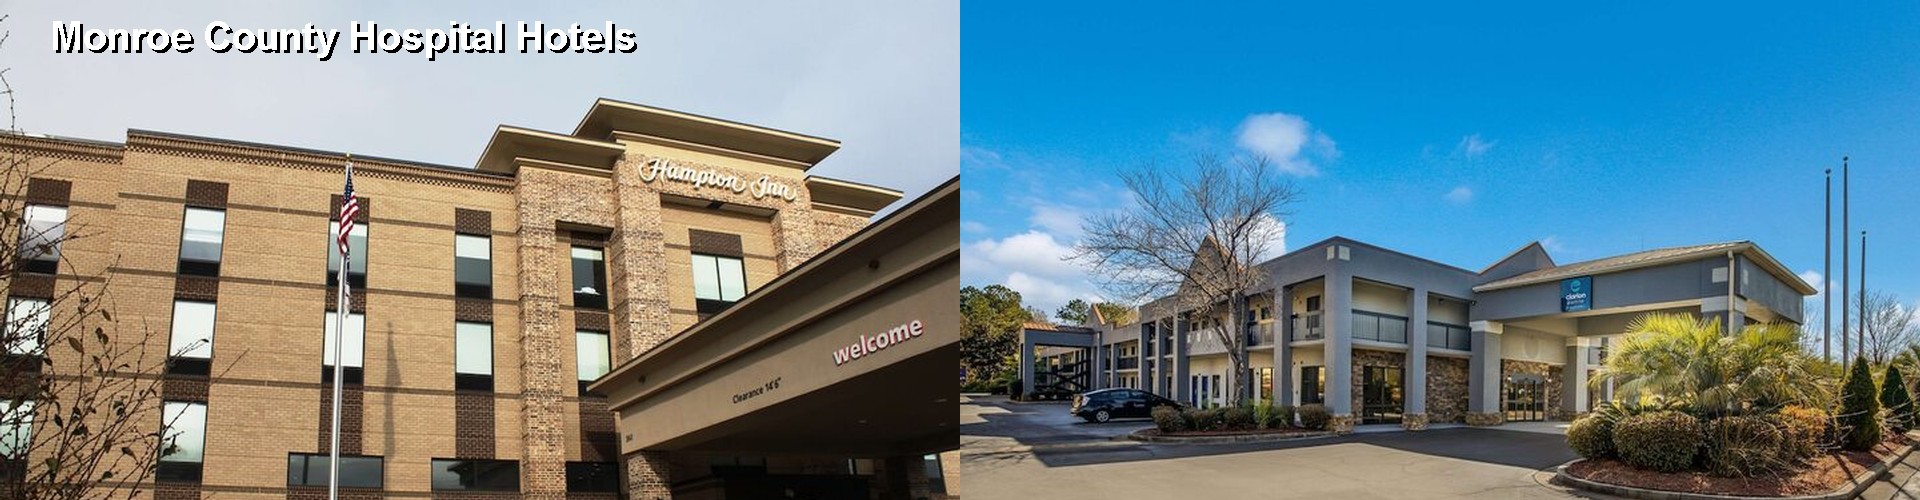 4 Best Hotels near Monroe County Hospital